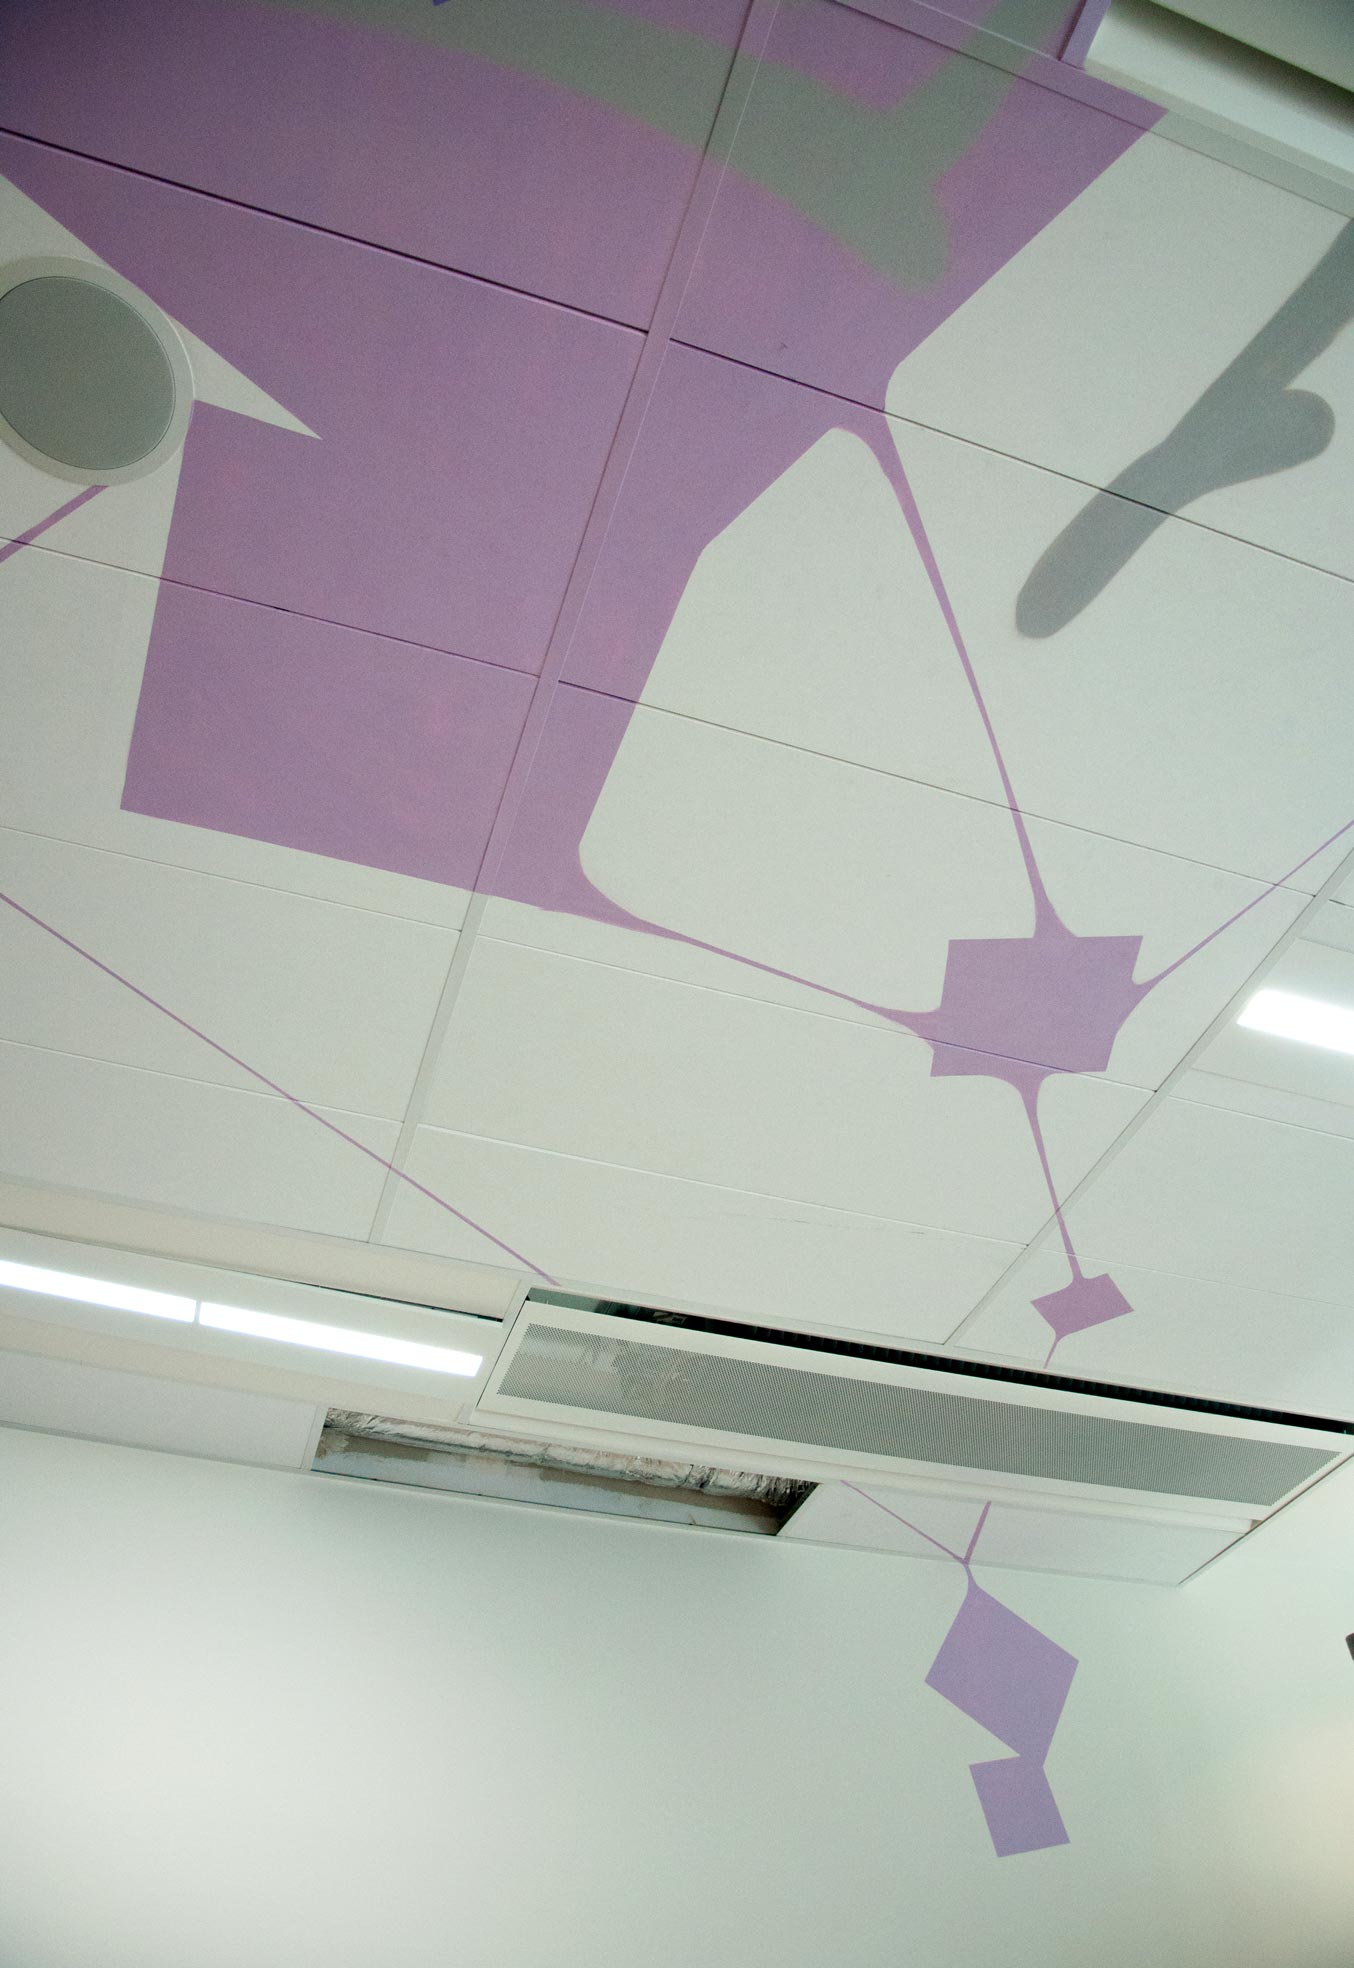 aeroport de paris decoration fresque espace detente peinture graff realisme main robot futur avion transport plafond